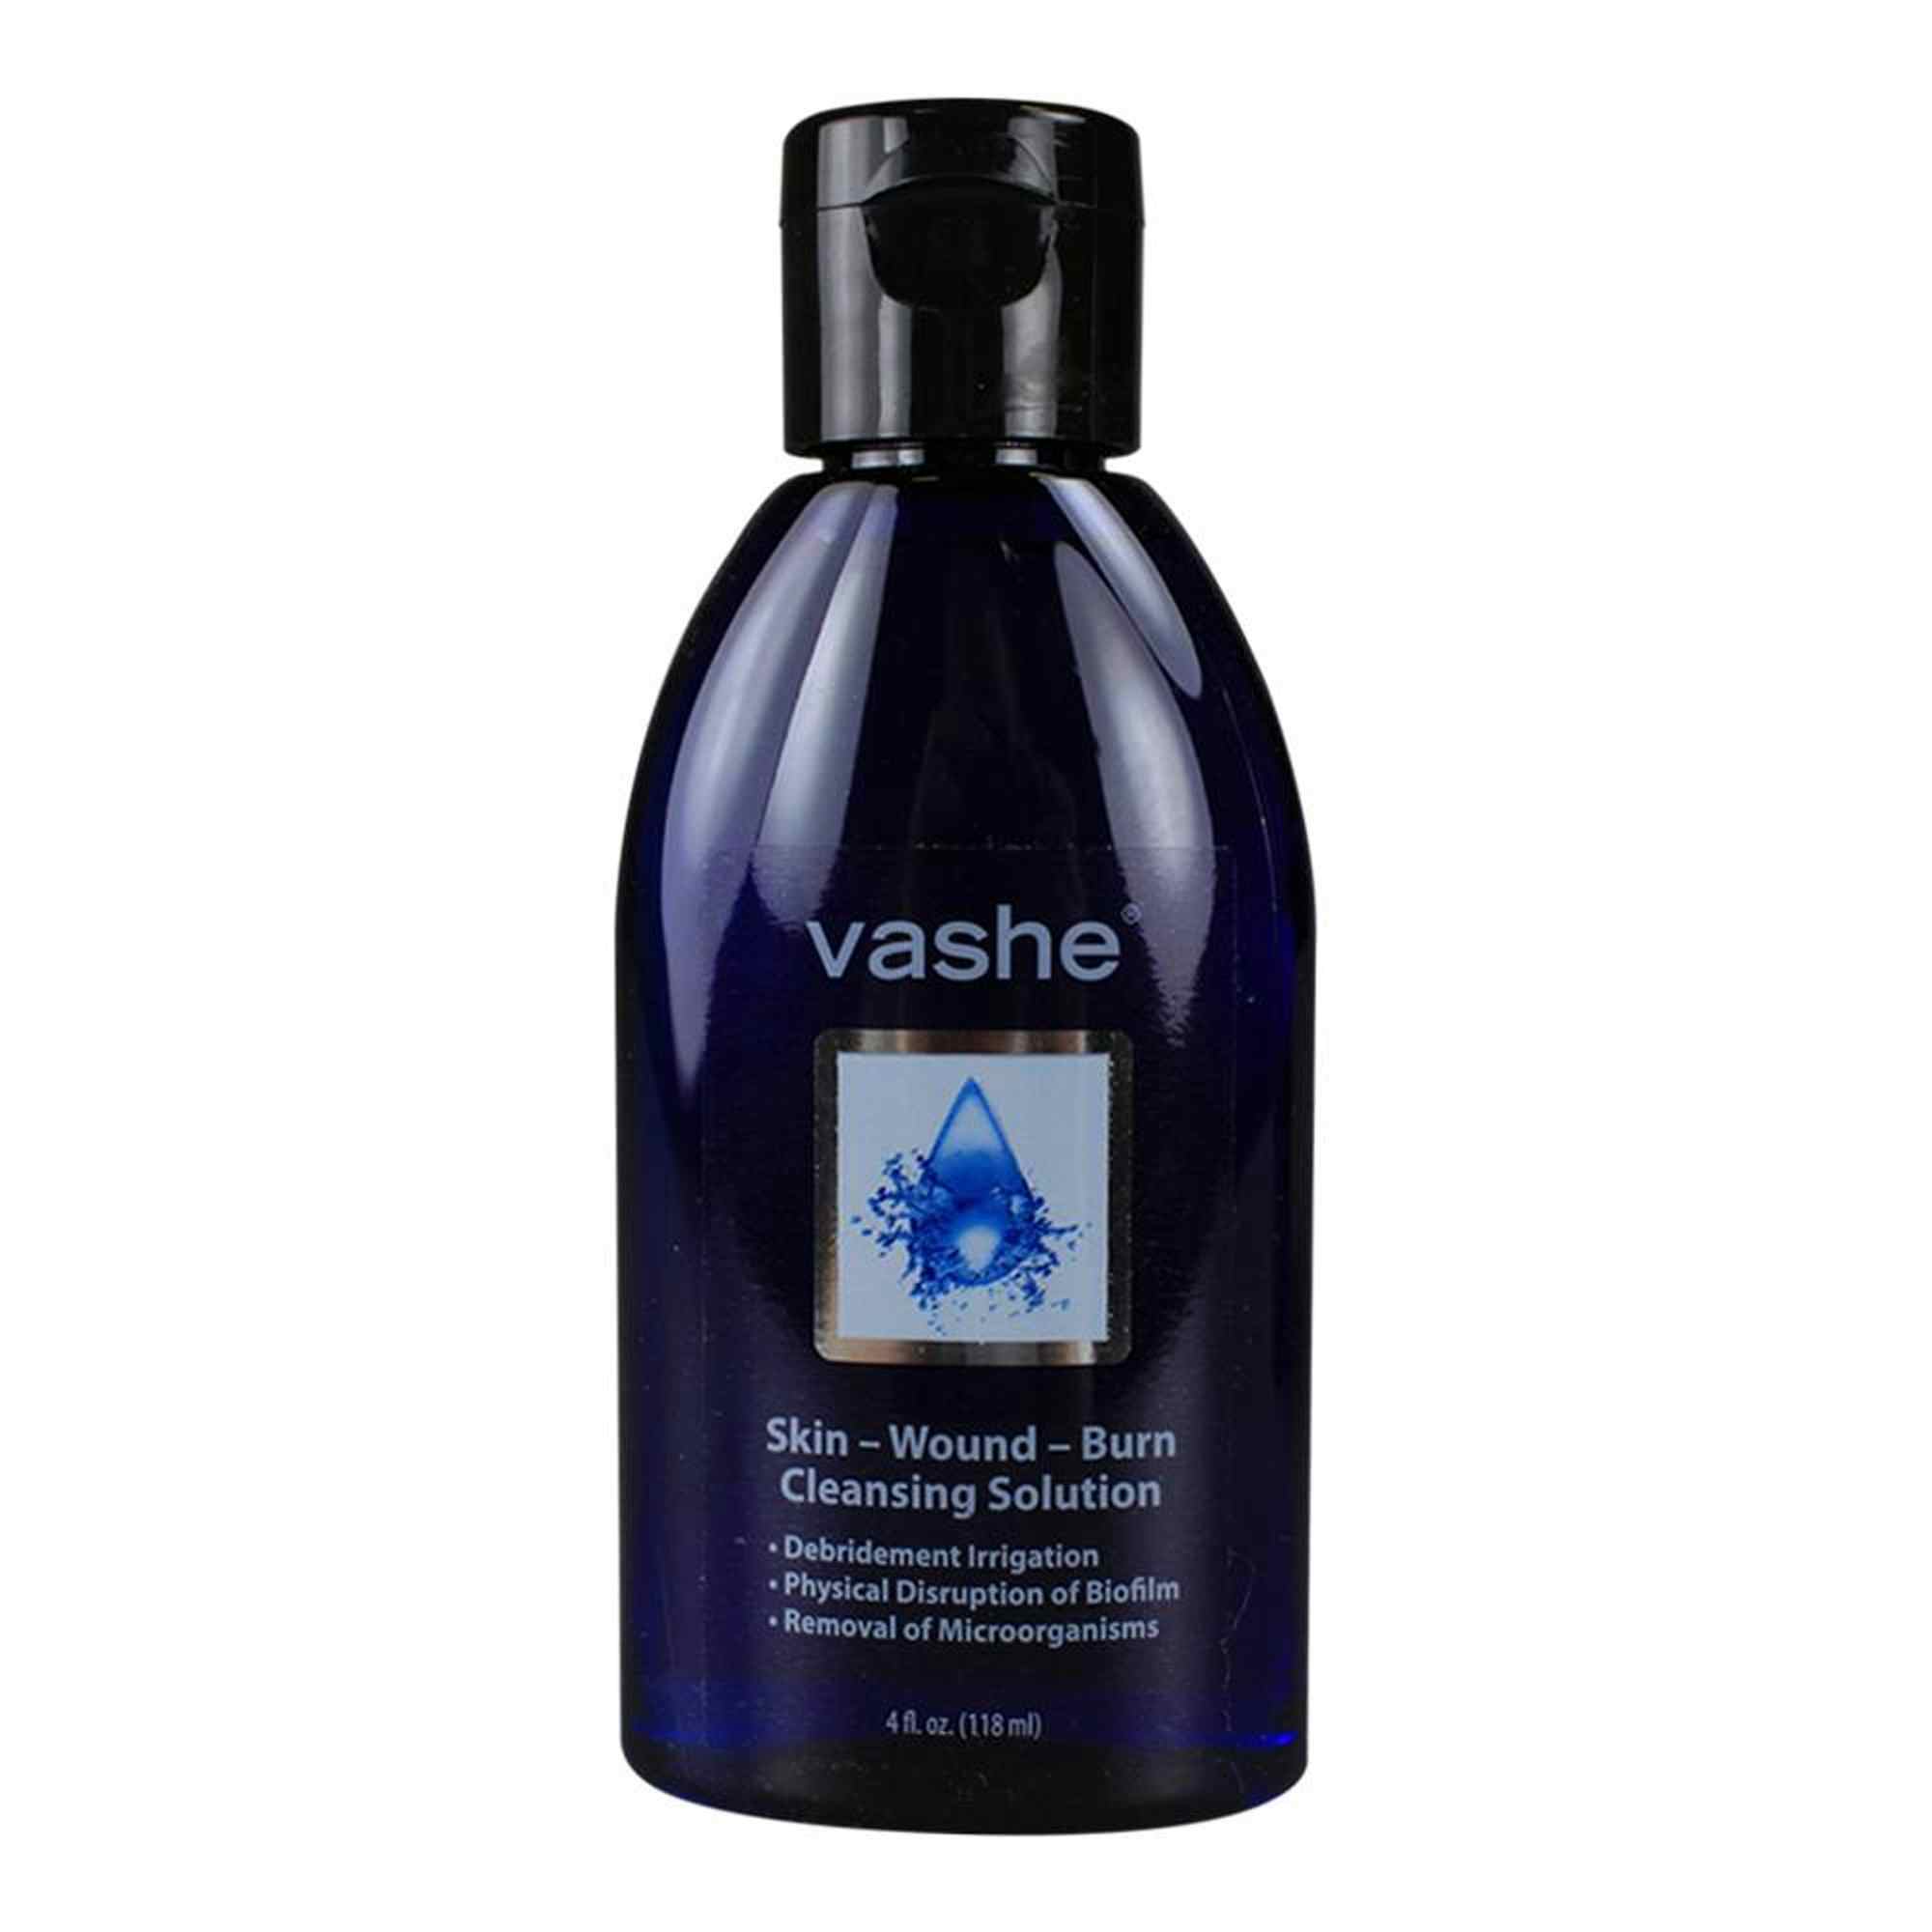 Vashe Skin/Wound/Burn Cleansing Solution, 00312, 4 oz. bottle - 1 Each